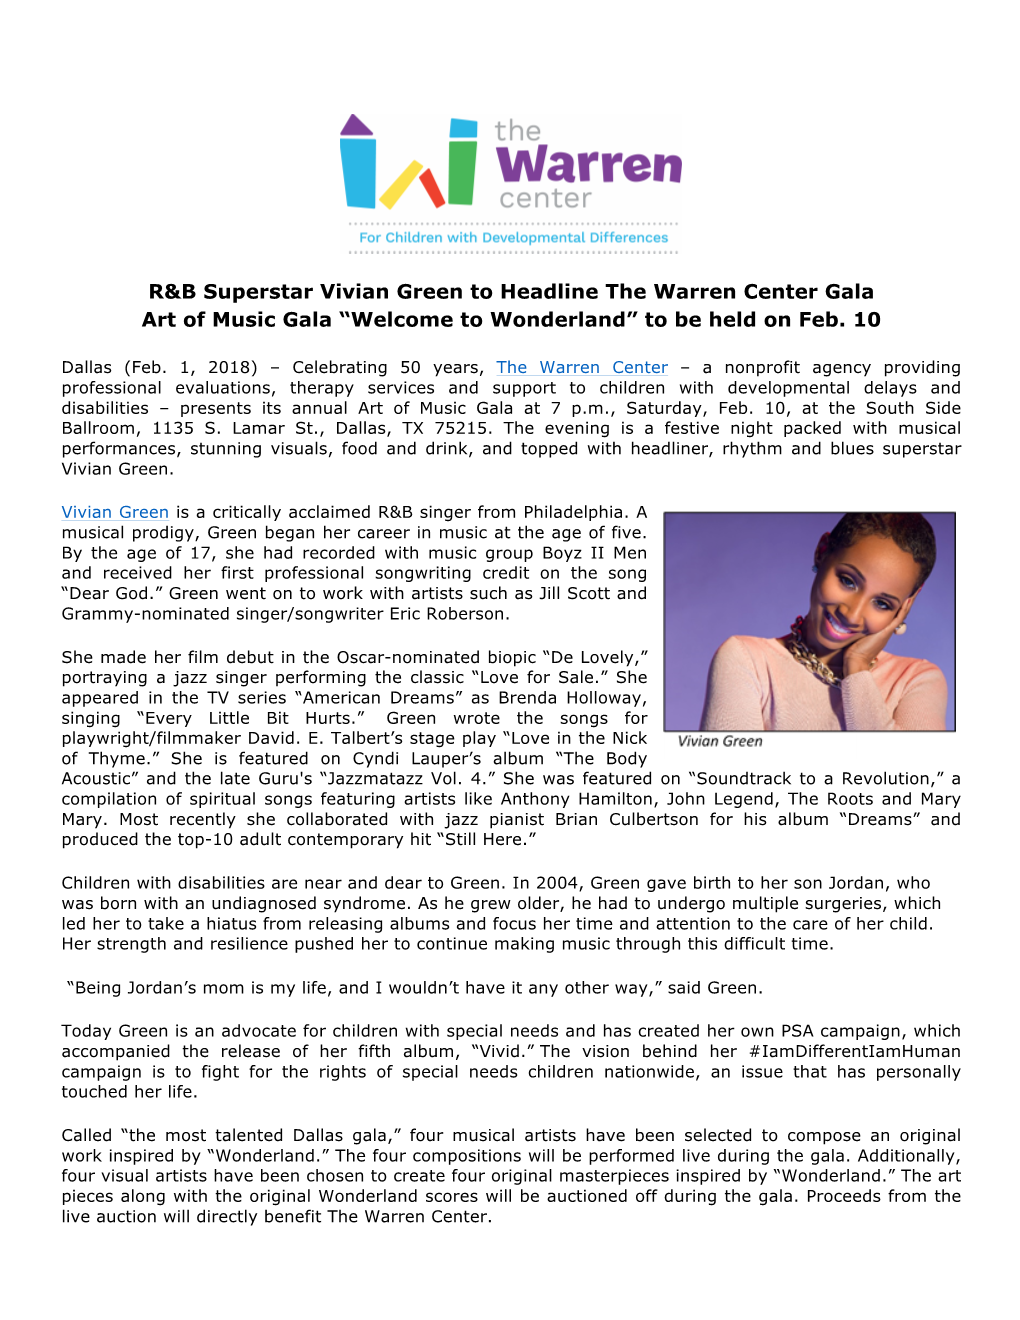 R&B Superstar Vivian Green to Headline the Warren Center Gala